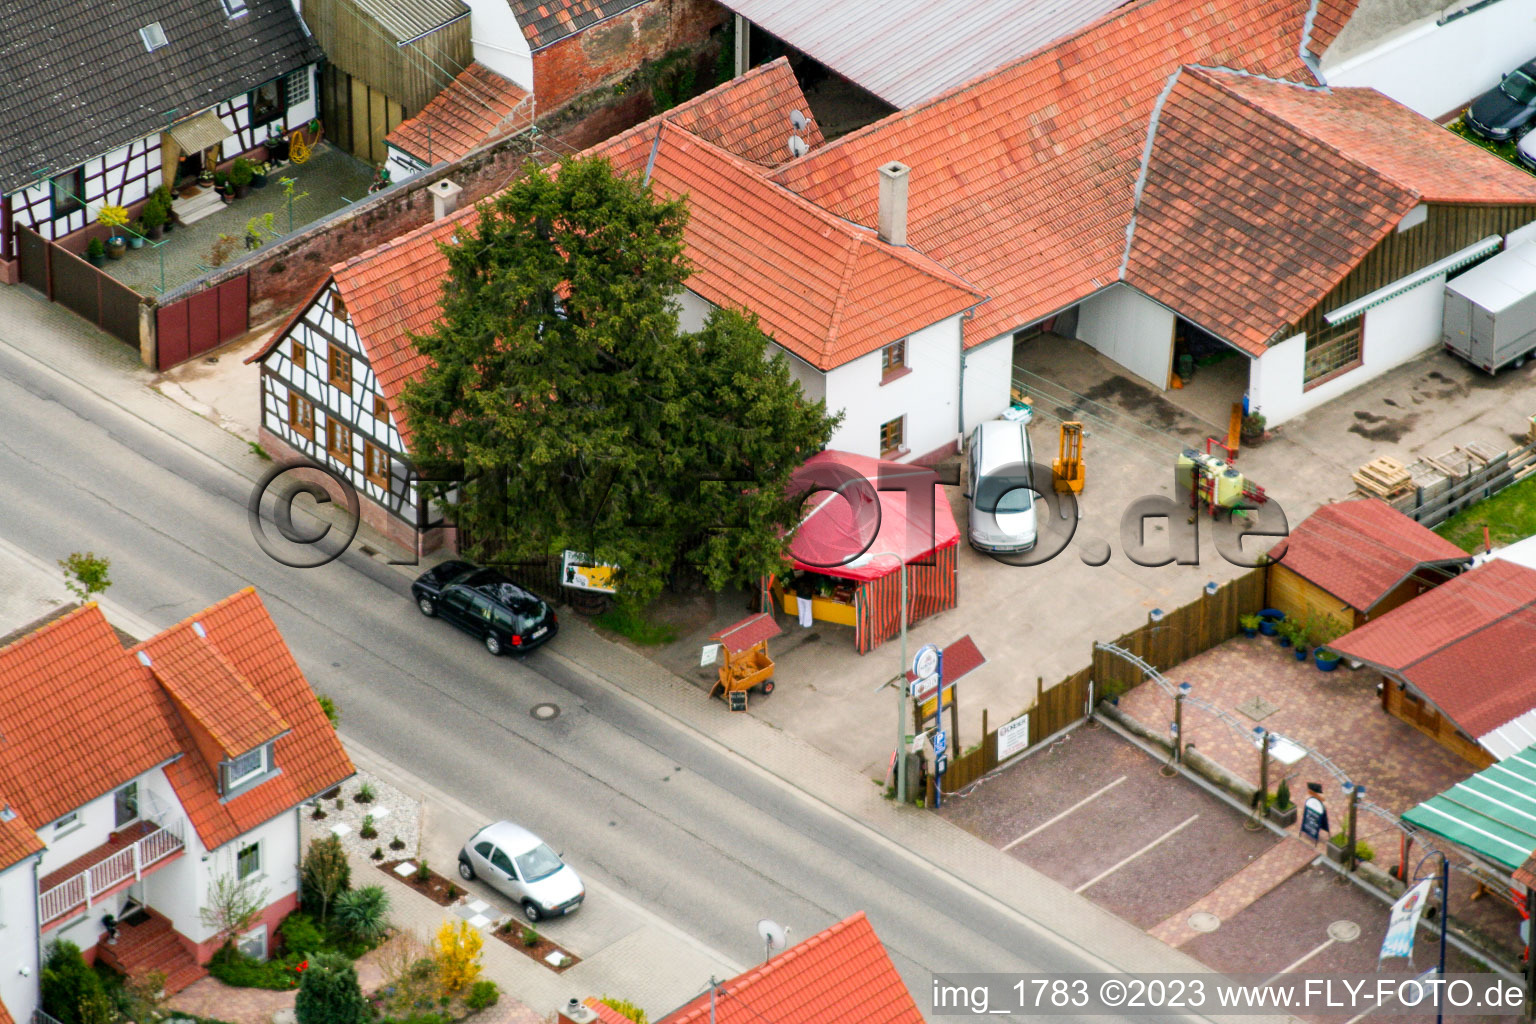 Hergersweiler im Bundesland Rheinland-Pfalz, Deutschland von einer Drohne aus